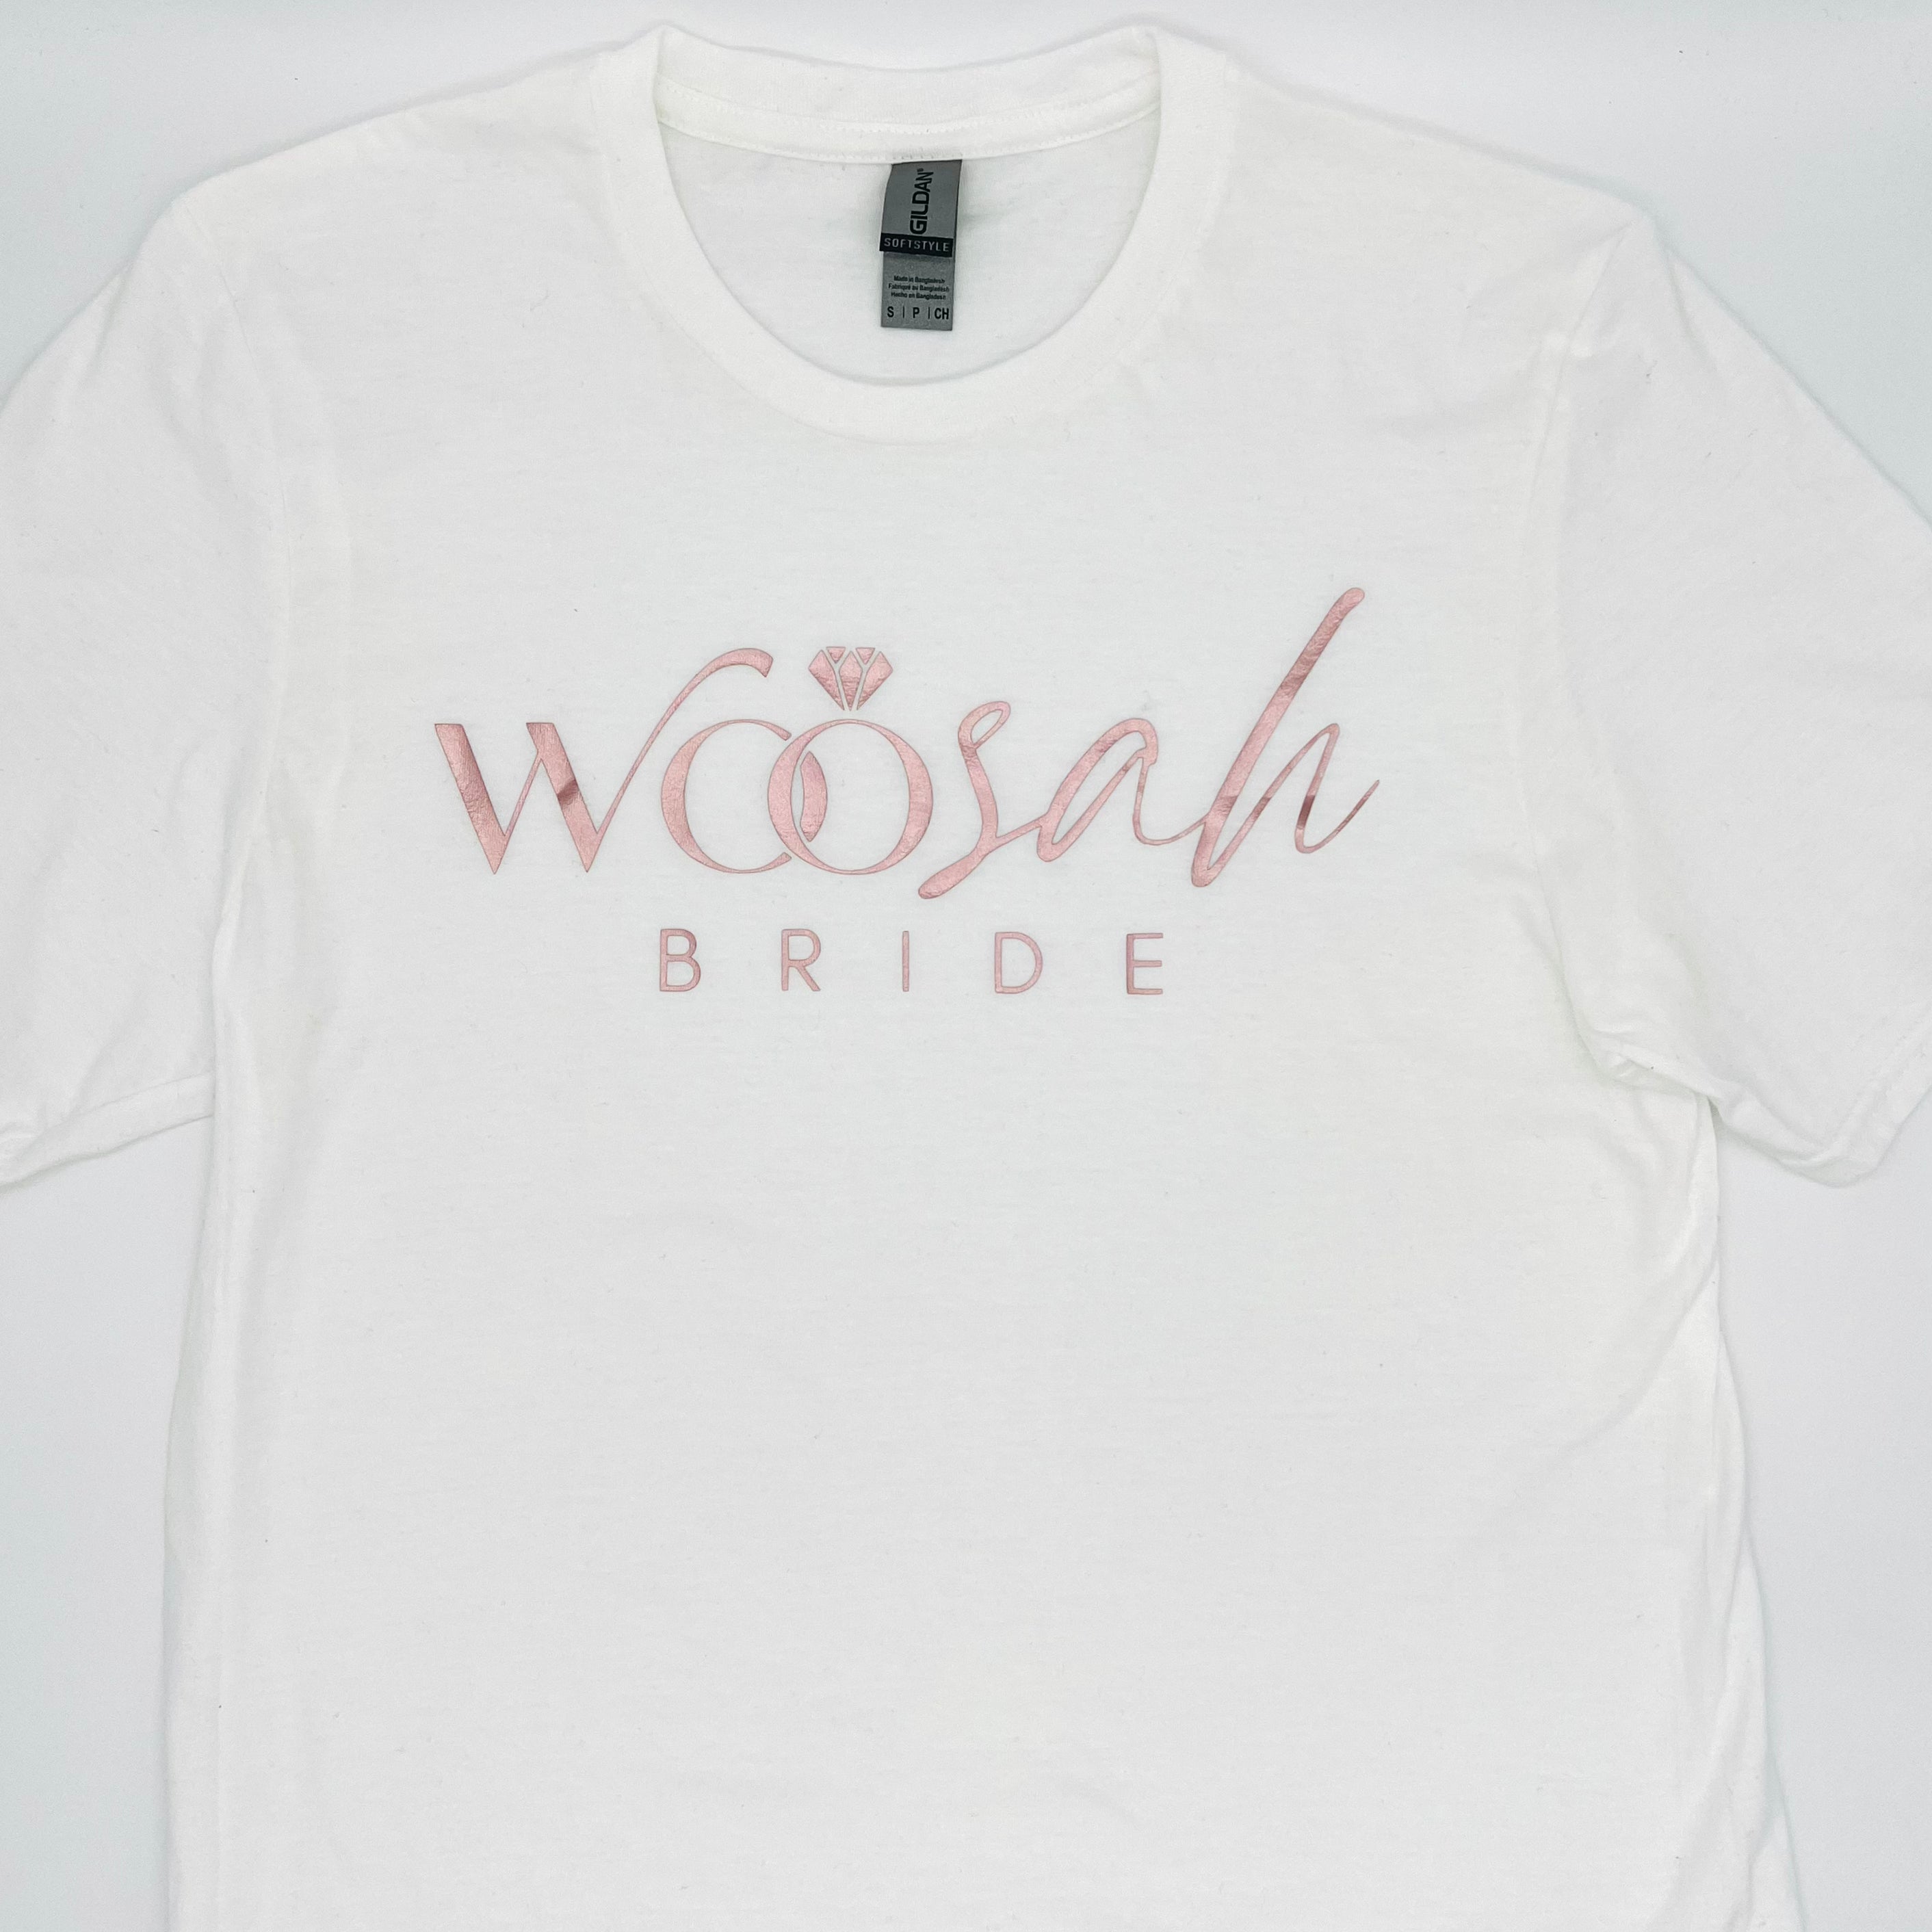 Woosah Bride Signature Logo Tee